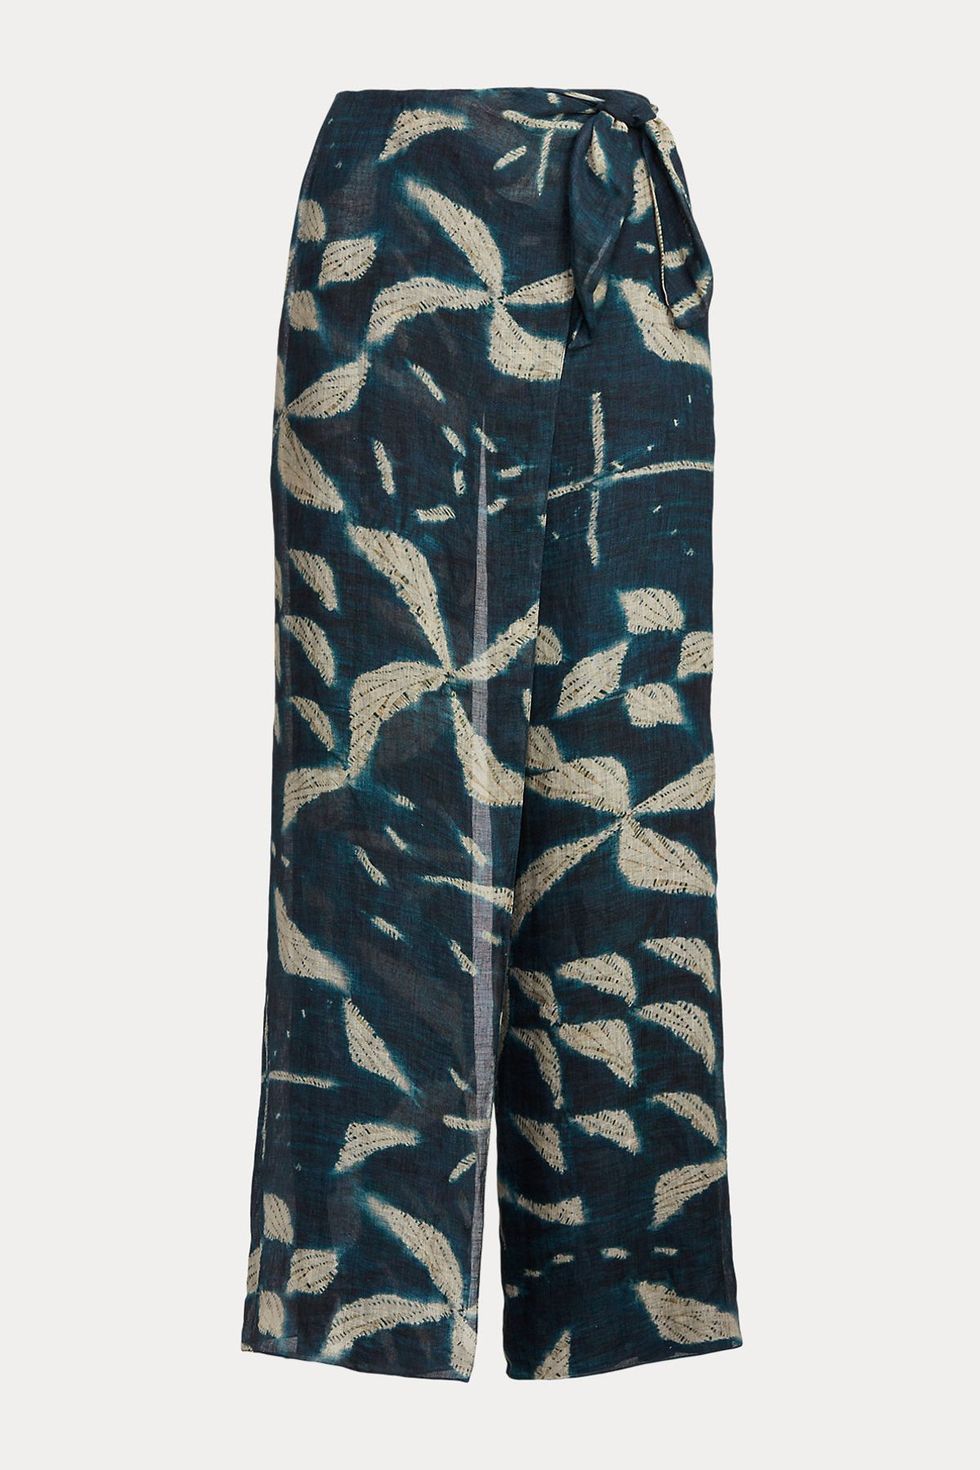 Yazmin Batik-Print Linen-Silk Pant